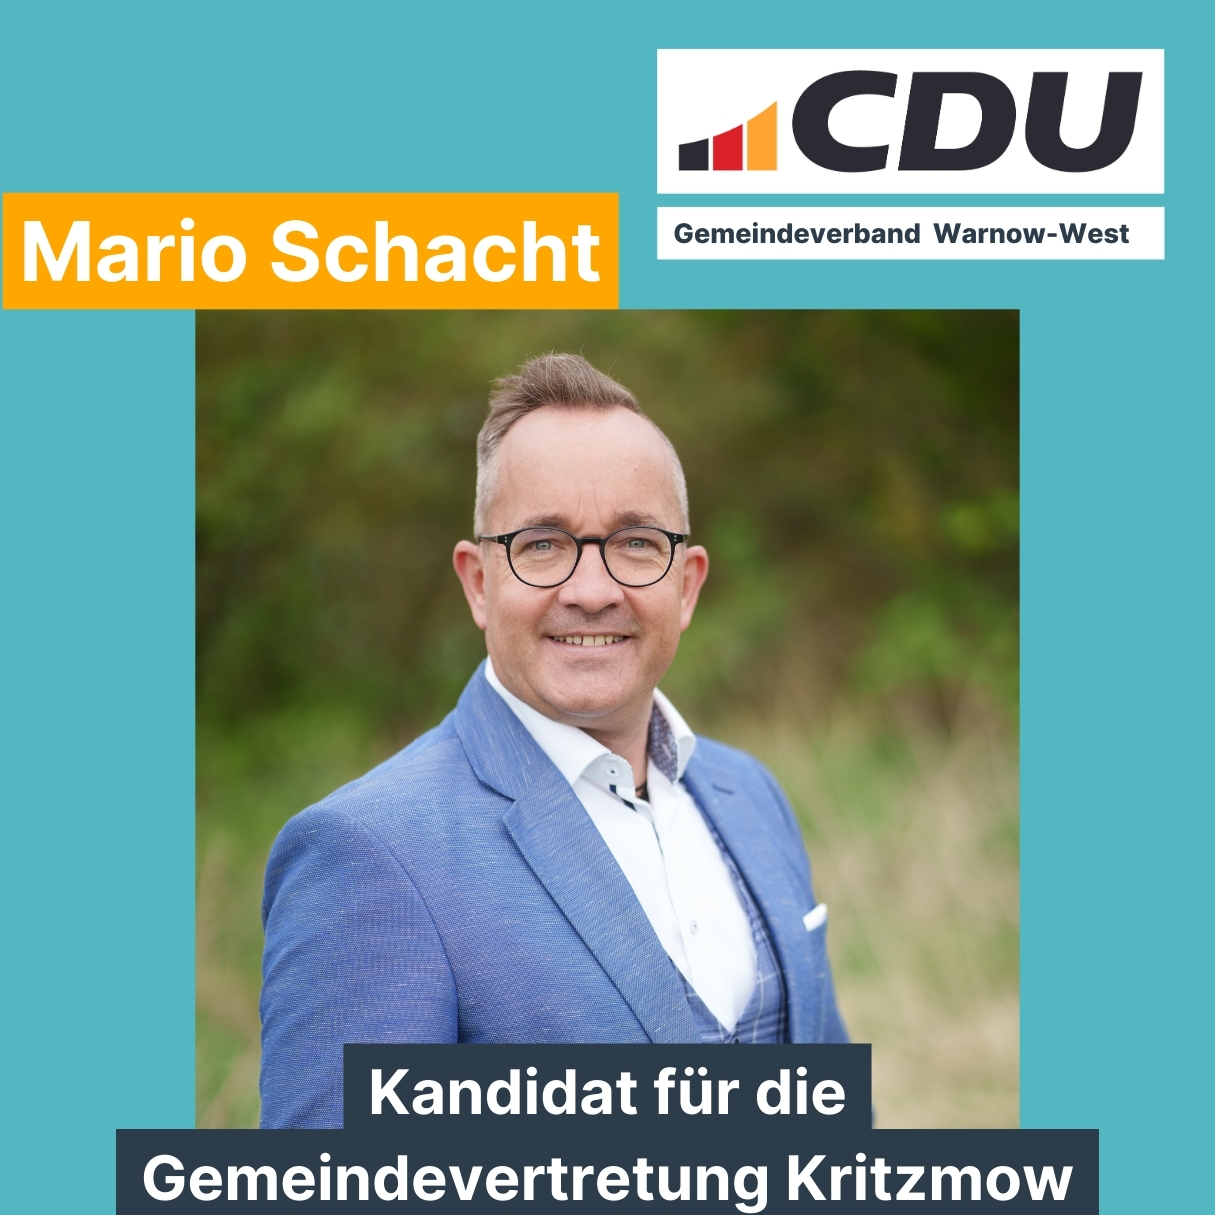 Mario Schacht